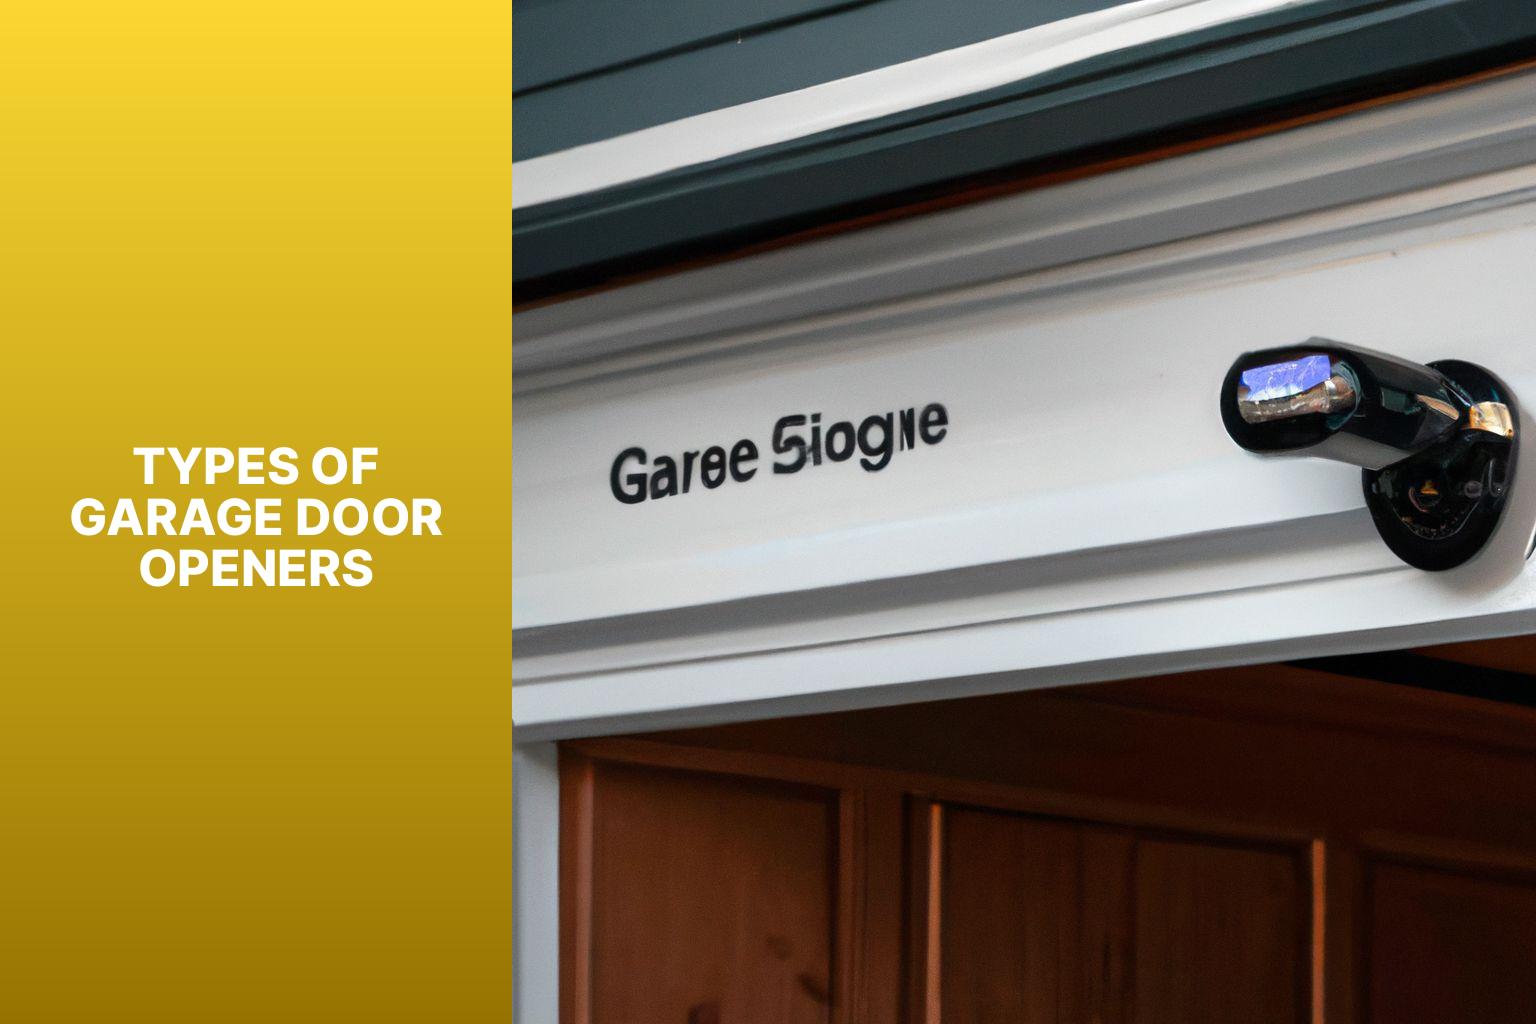 Types of Garage Door Openers - How to Install Garage Door Opener? 